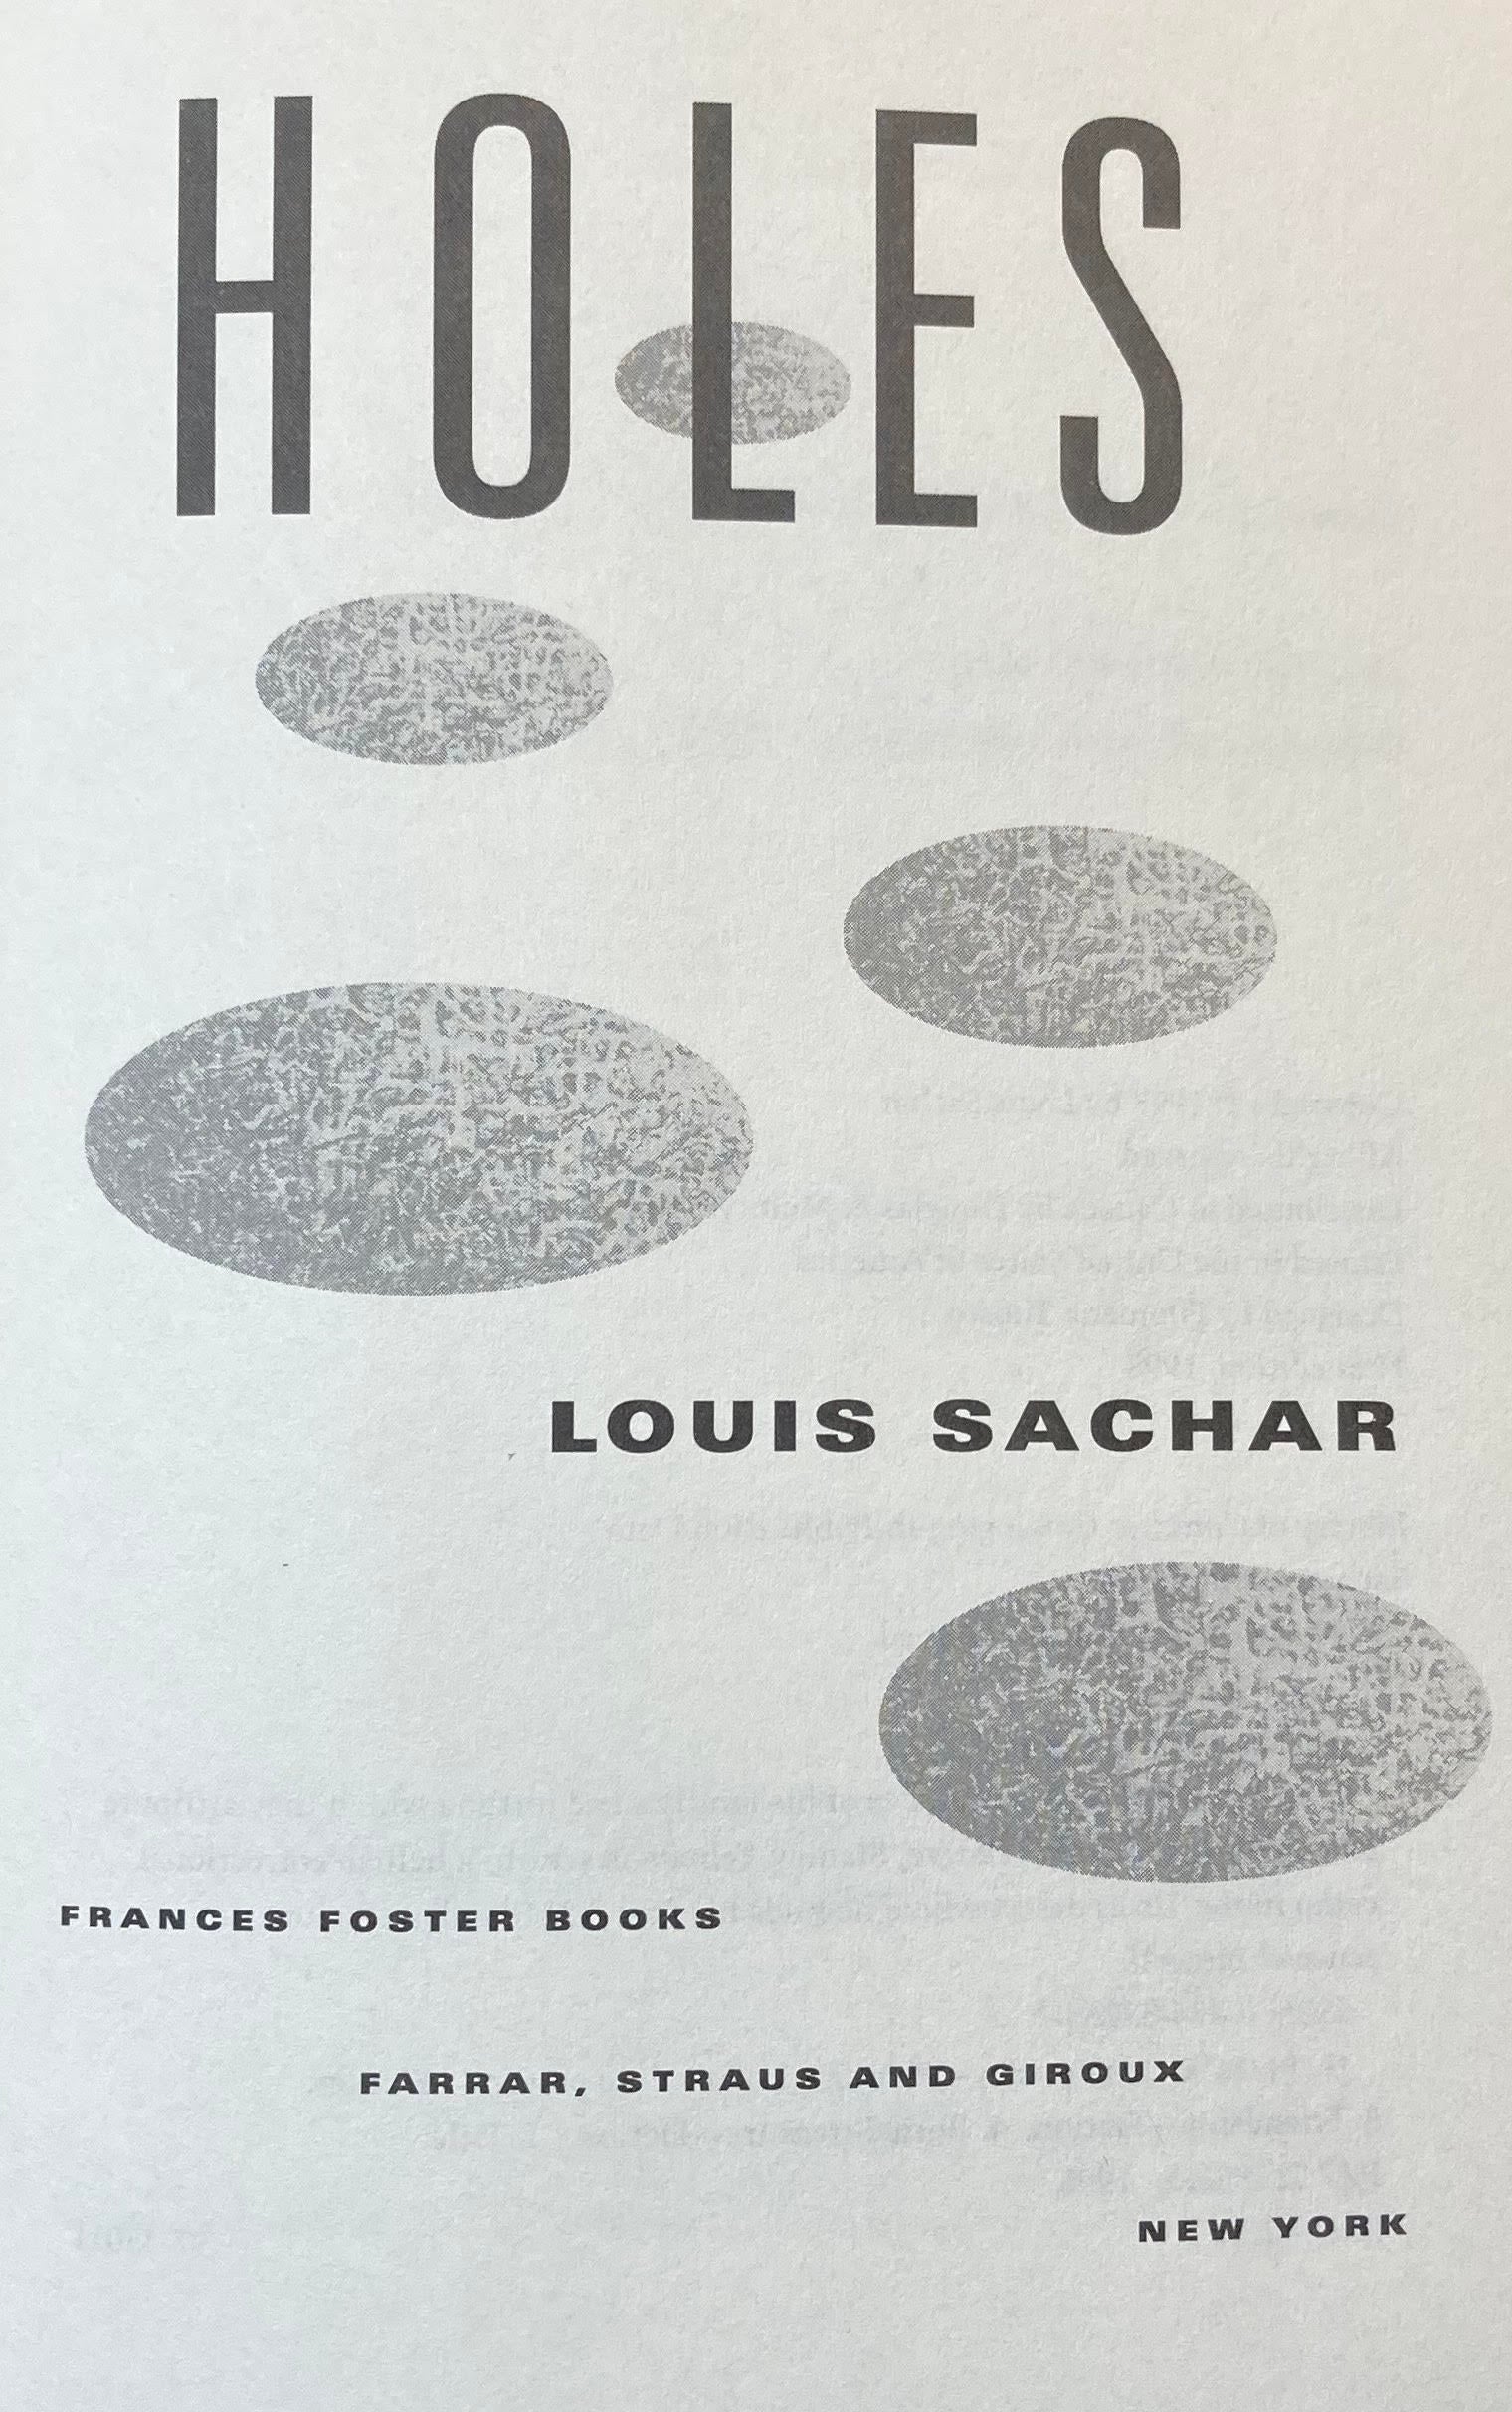 Author Fan Face-off #68: Louis Sachar/HOLES 